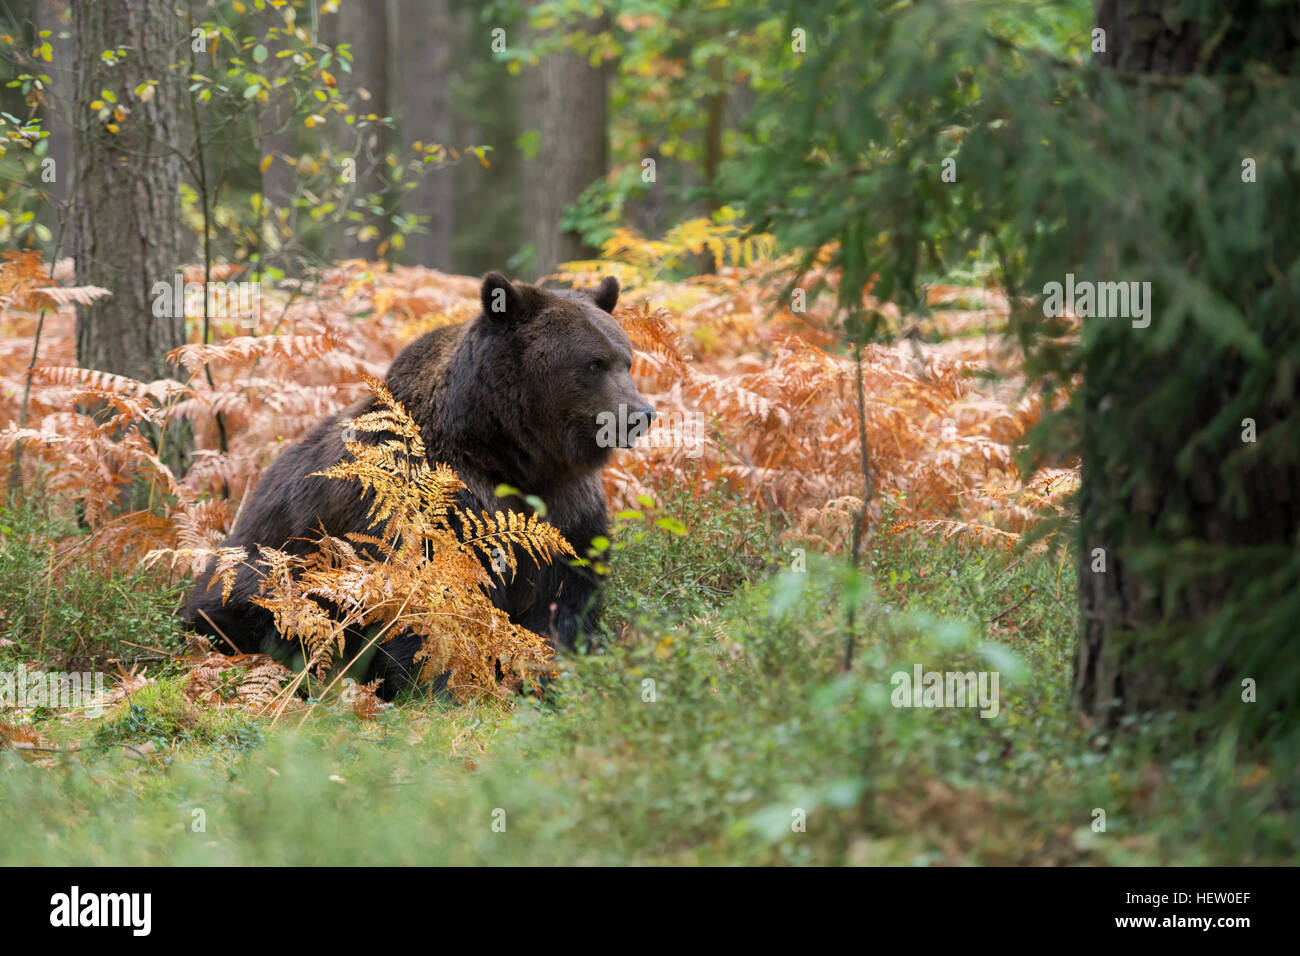 Oso Pardo europeo / Braunbaer ( Ursus arctos ) sentado en la espesura de un bosque, en colores otoñales helecho. Foto de stock